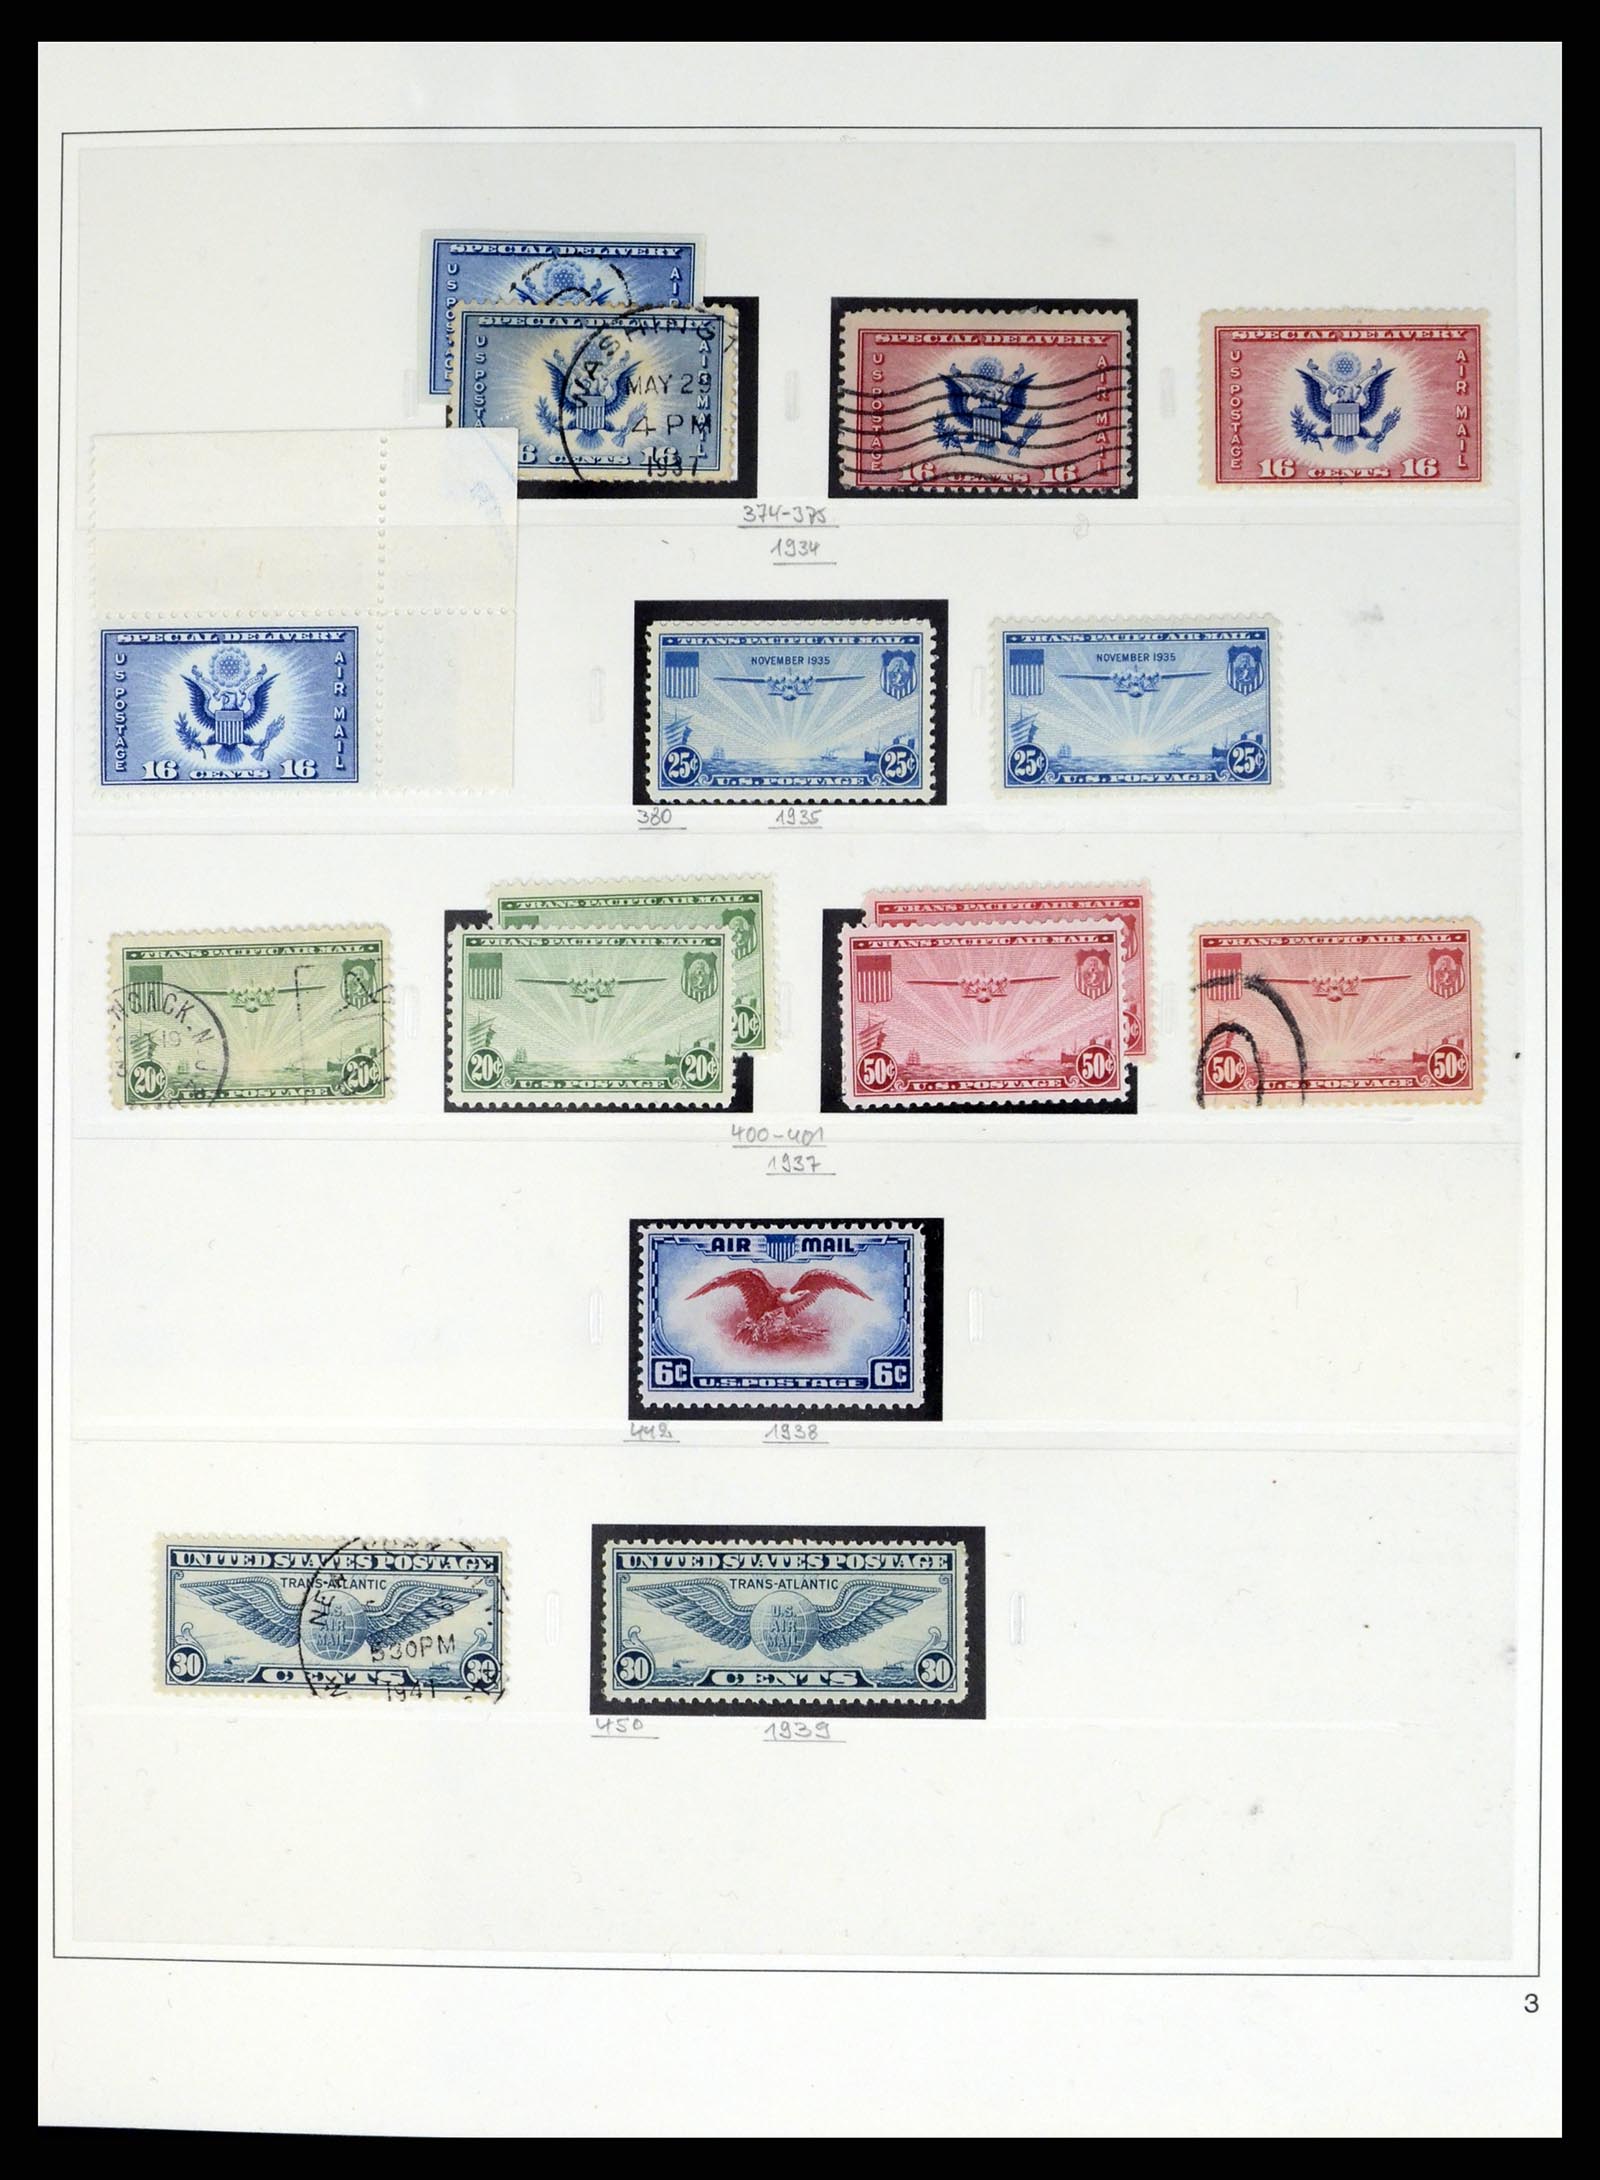 37551 200 - Stamp collection 37551 USA 1851-2001.